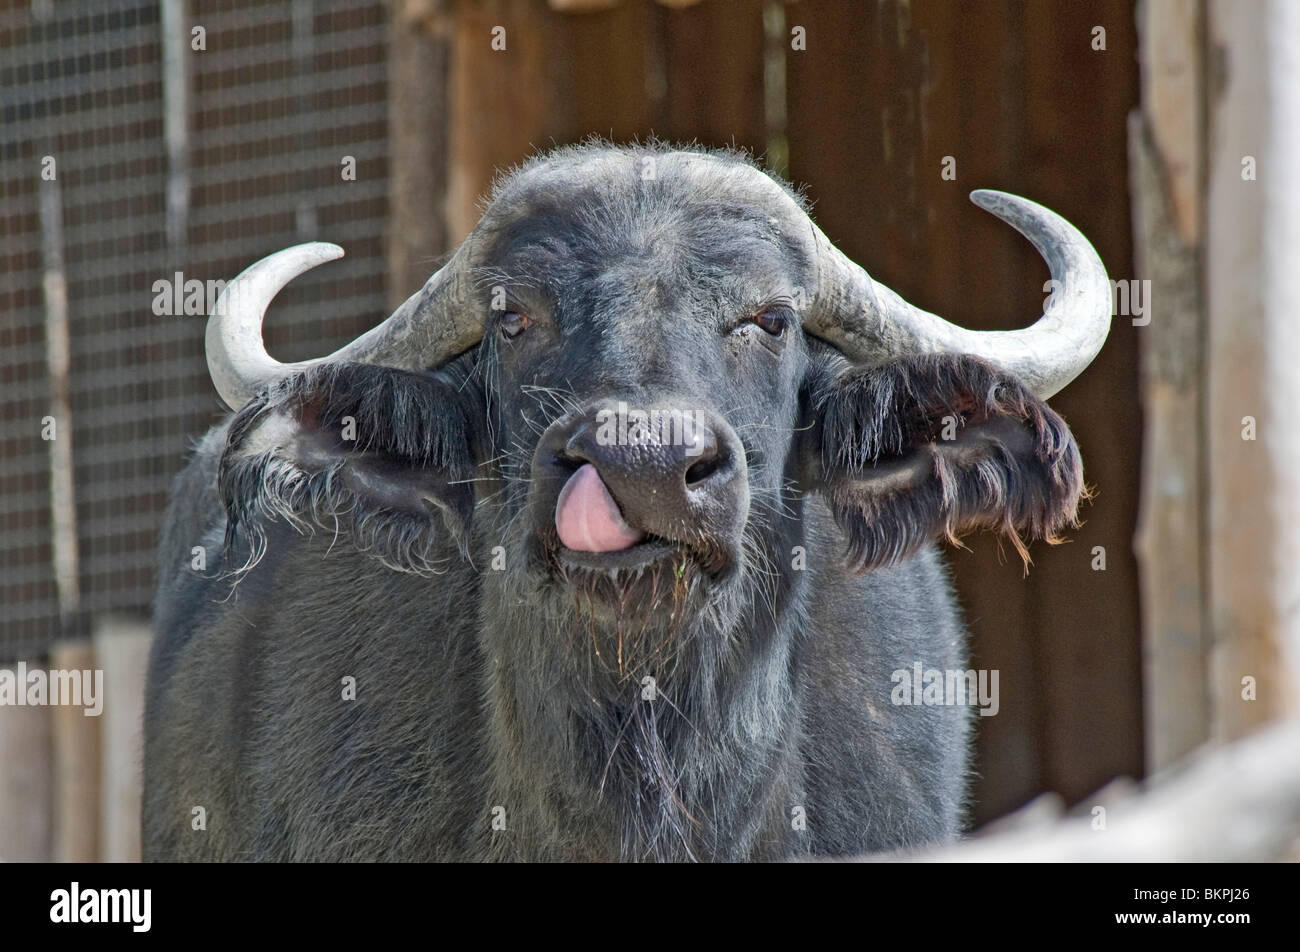 El búfalo africano lamer su nariz Foto de stock